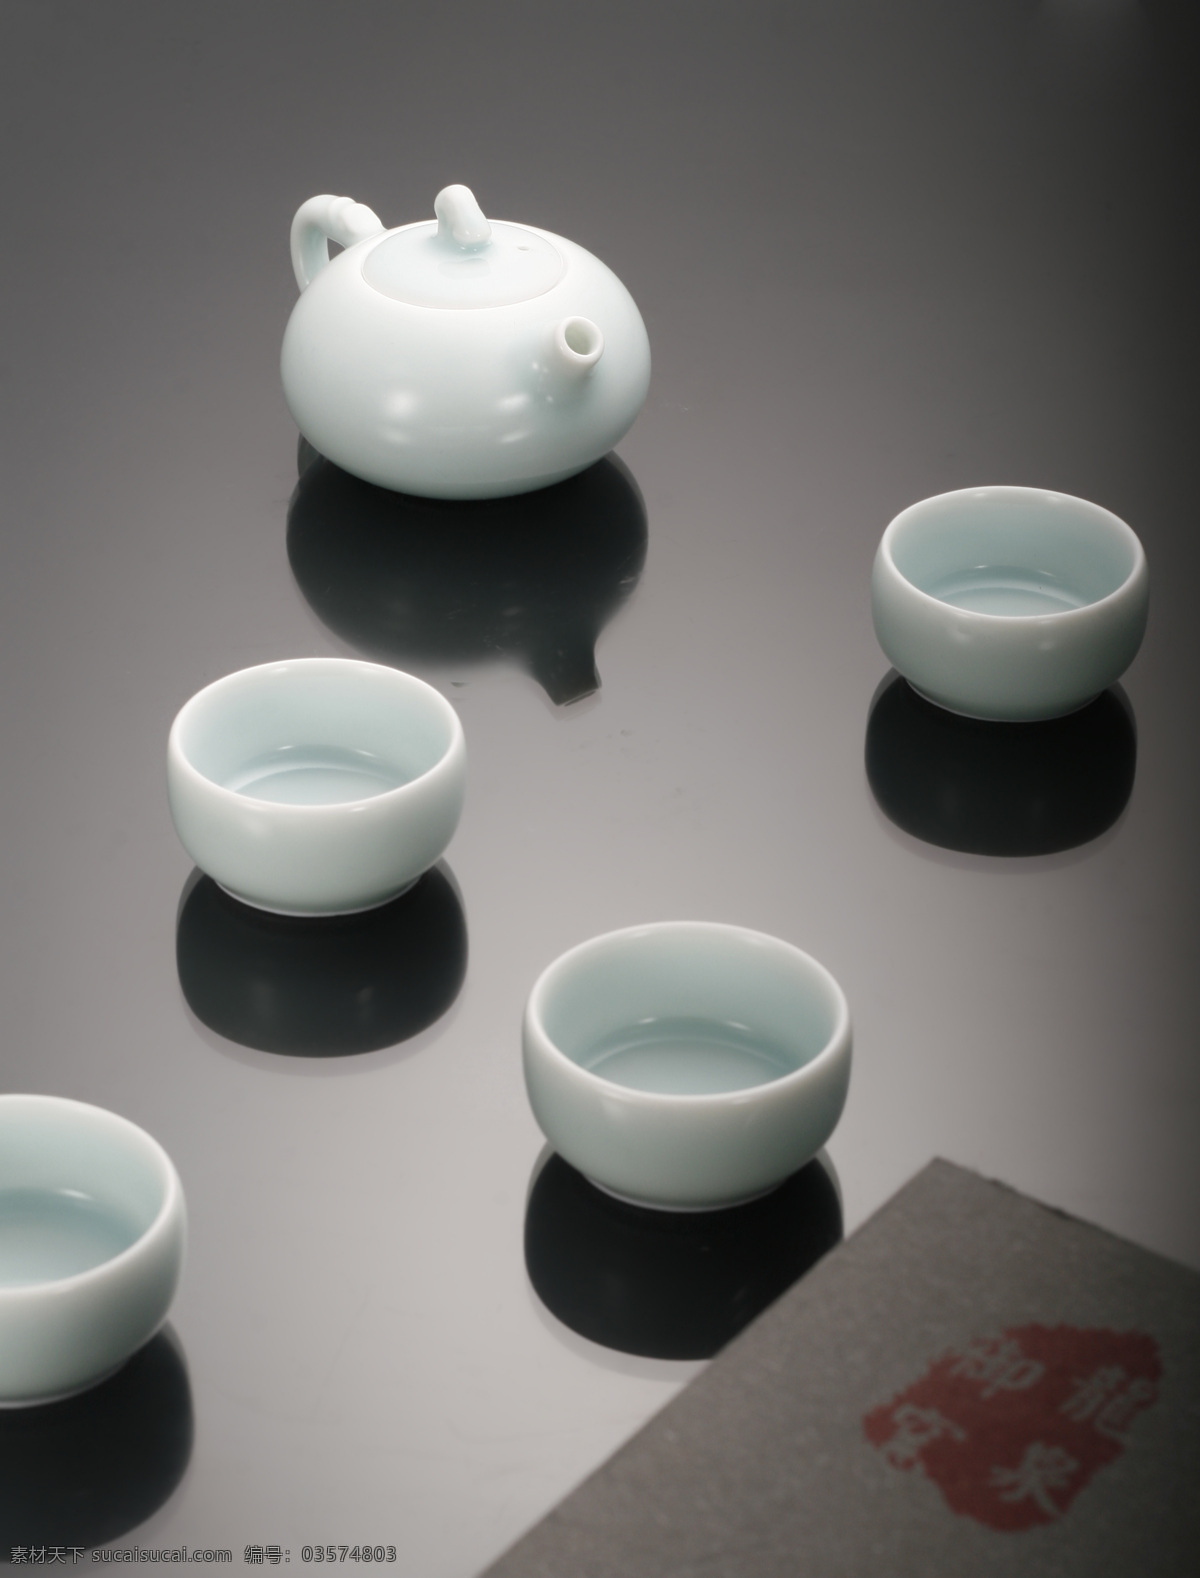 龙泉青瓷 茶具 青瓷茶具 青瓷 龙泉 粉青 创意摄影 茶具精品 传统文化 文化艺术